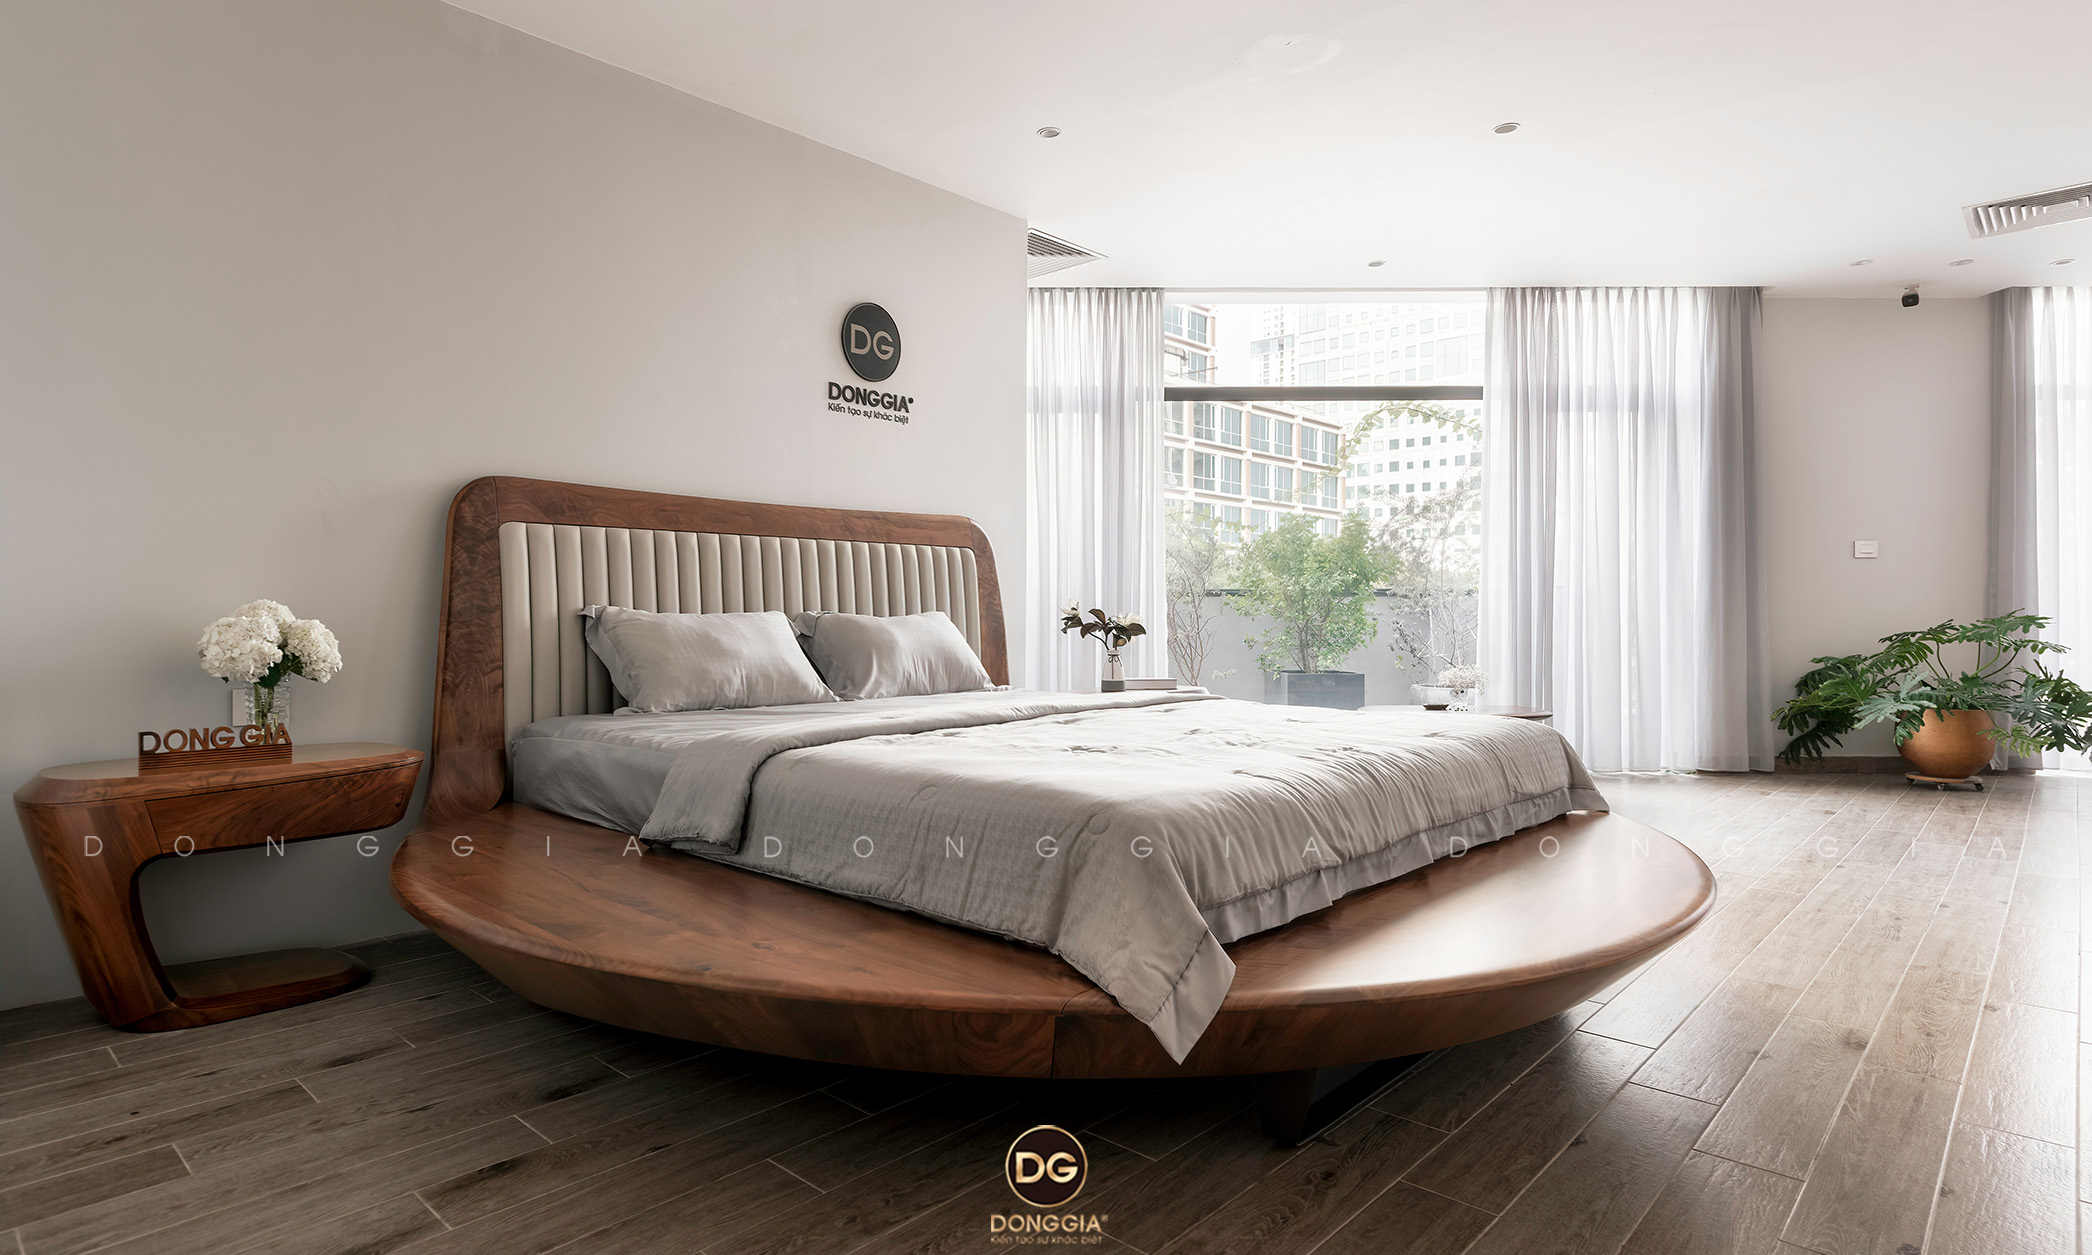 Giường ngủ gỗ Óc Chó hiện đại: Với một chiếc giường ngủ gỗ Óc Chó hiện đại, bạn sẽ có được một không gian phòng ngủ tinh tế và hiện đại. Gỗ Óc Chó là một loại gỗ đẹp, chắc chắn và bền bỉ, đặc biệt là trong các sản phẩm nội thất. Với một chiếc giường ngủ gỗ Óc Chó hiện đại, bạn sẽ tận hưởng cảm giác thoải mái và đầy phong cách khi nghỉ ngơi sau một ngày làm việc mệt mỏi.